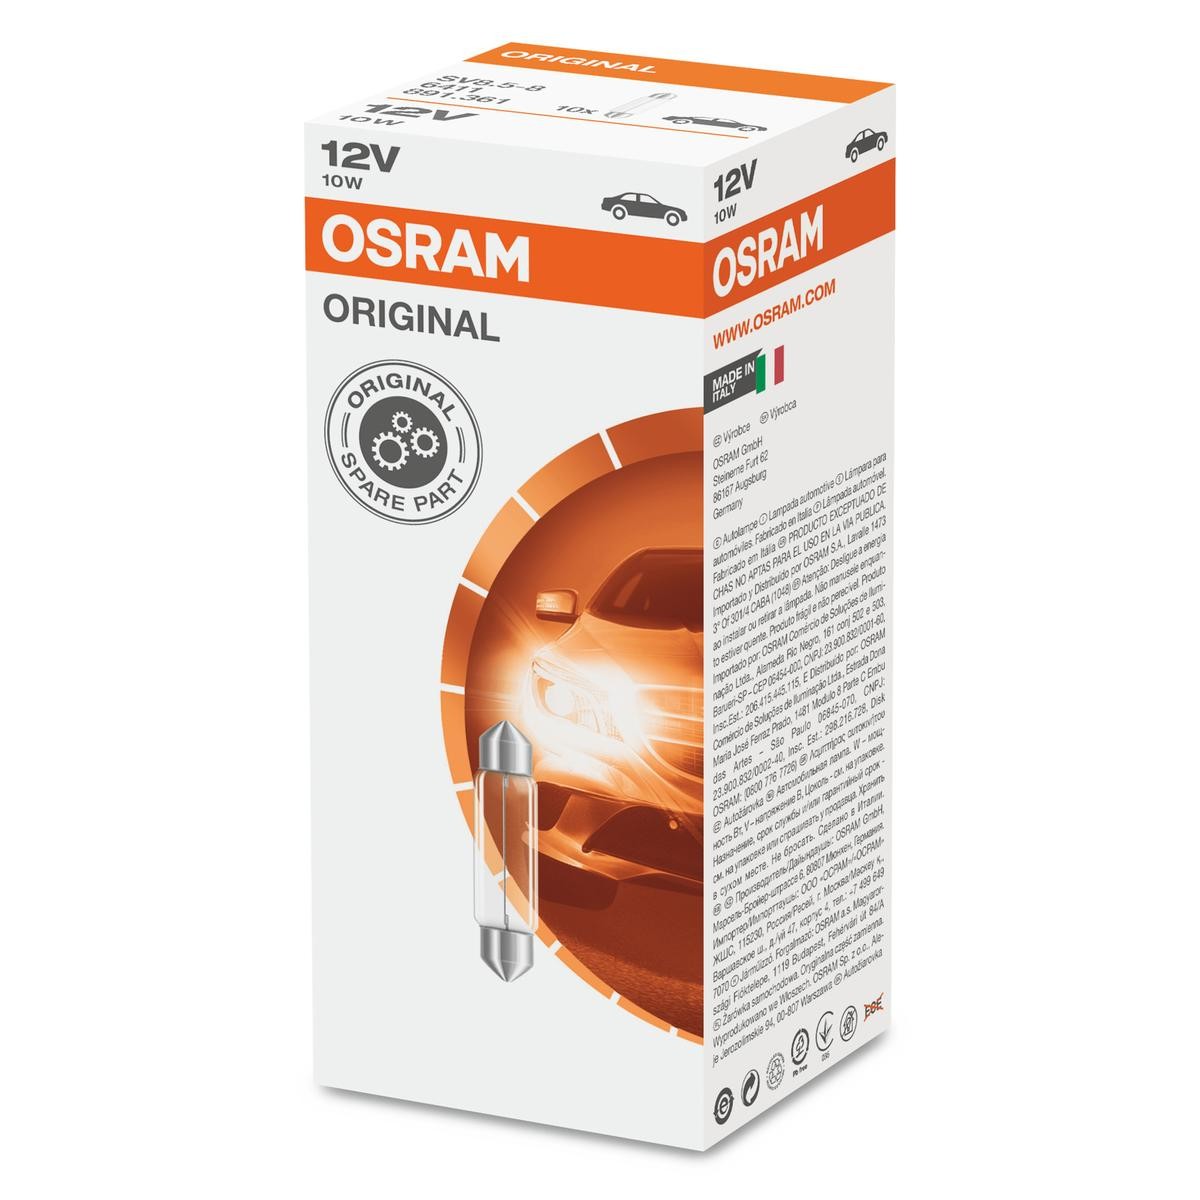 Autobianchi ricambi di qualità originale OSRAM 6411